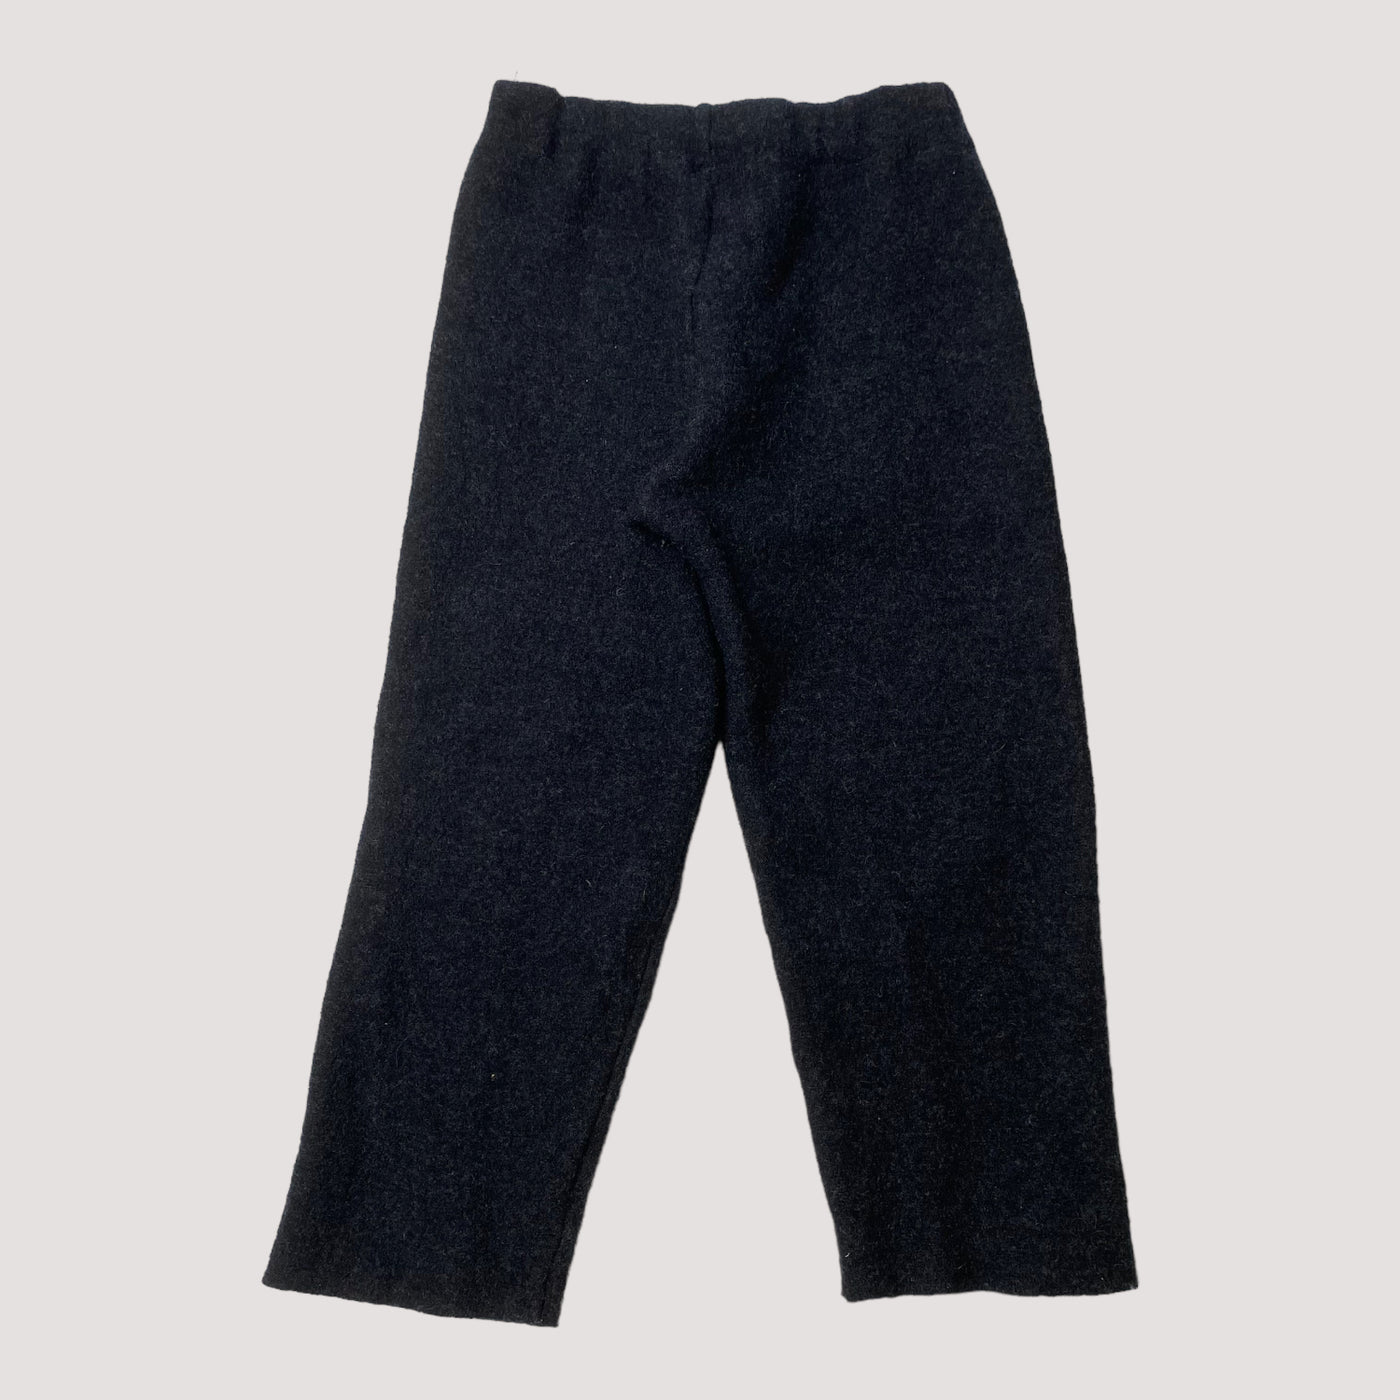 boiled wool pants, black | 110/116cm